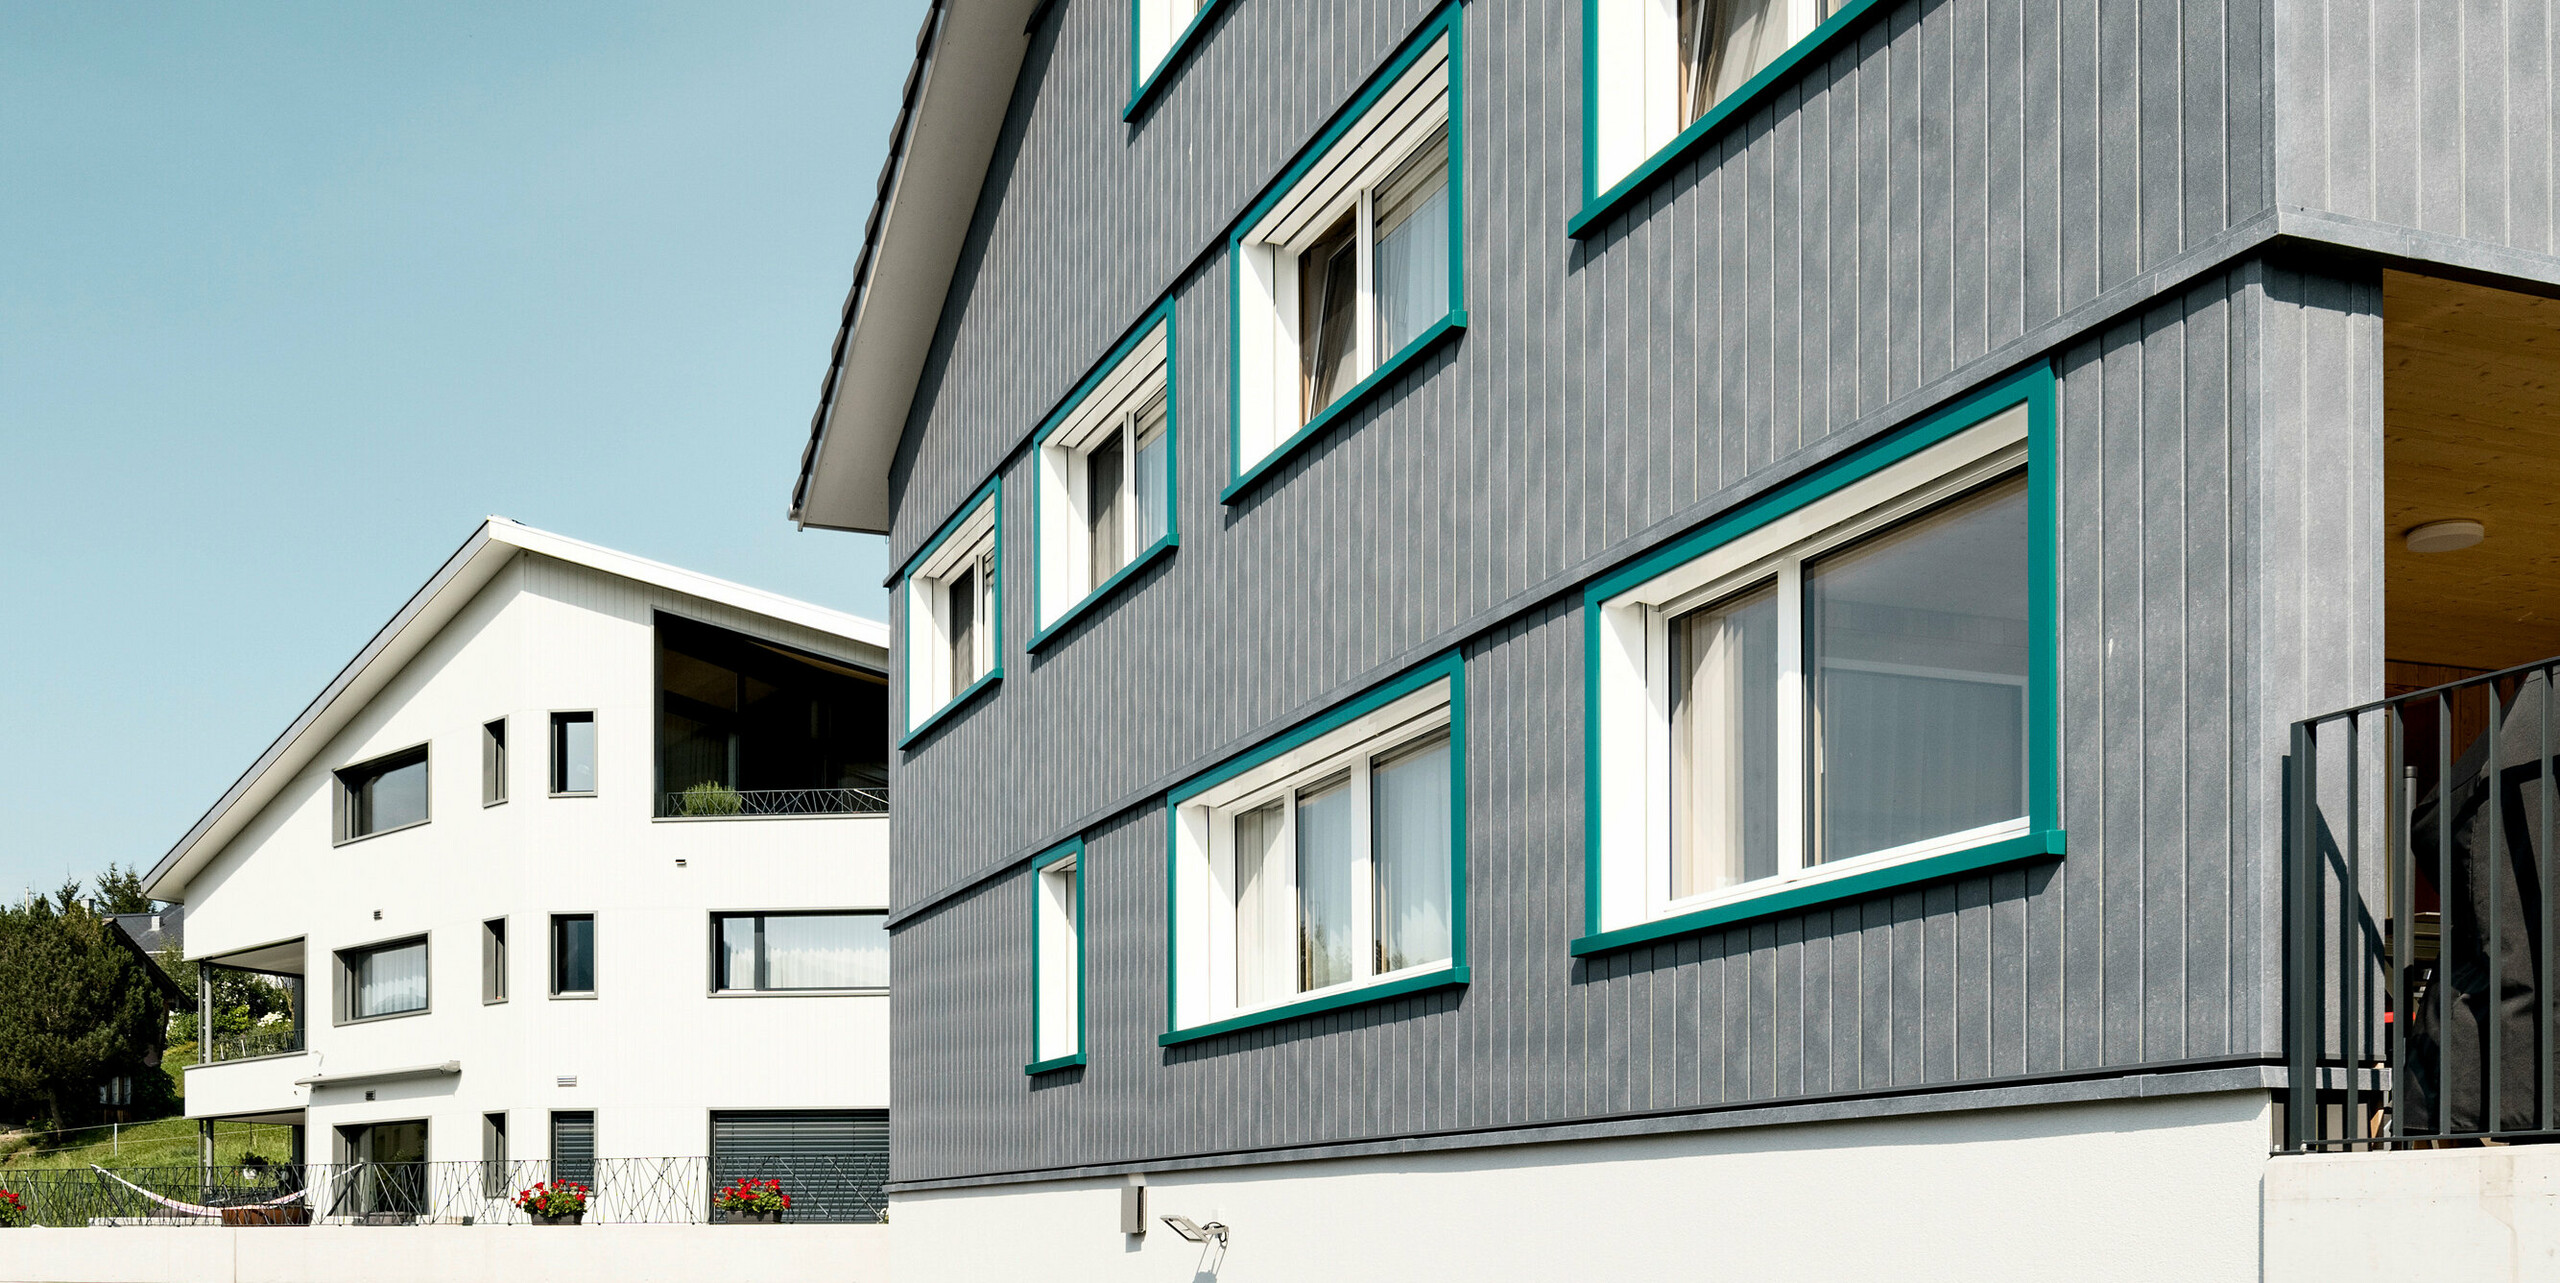 PREFA Sidings in P.10 Steingrau bzw. P.10 Prefaweiß an den Fassaden von zwei benachbarten Mehrfamilienhäusern in Weissbad, Schweiz.